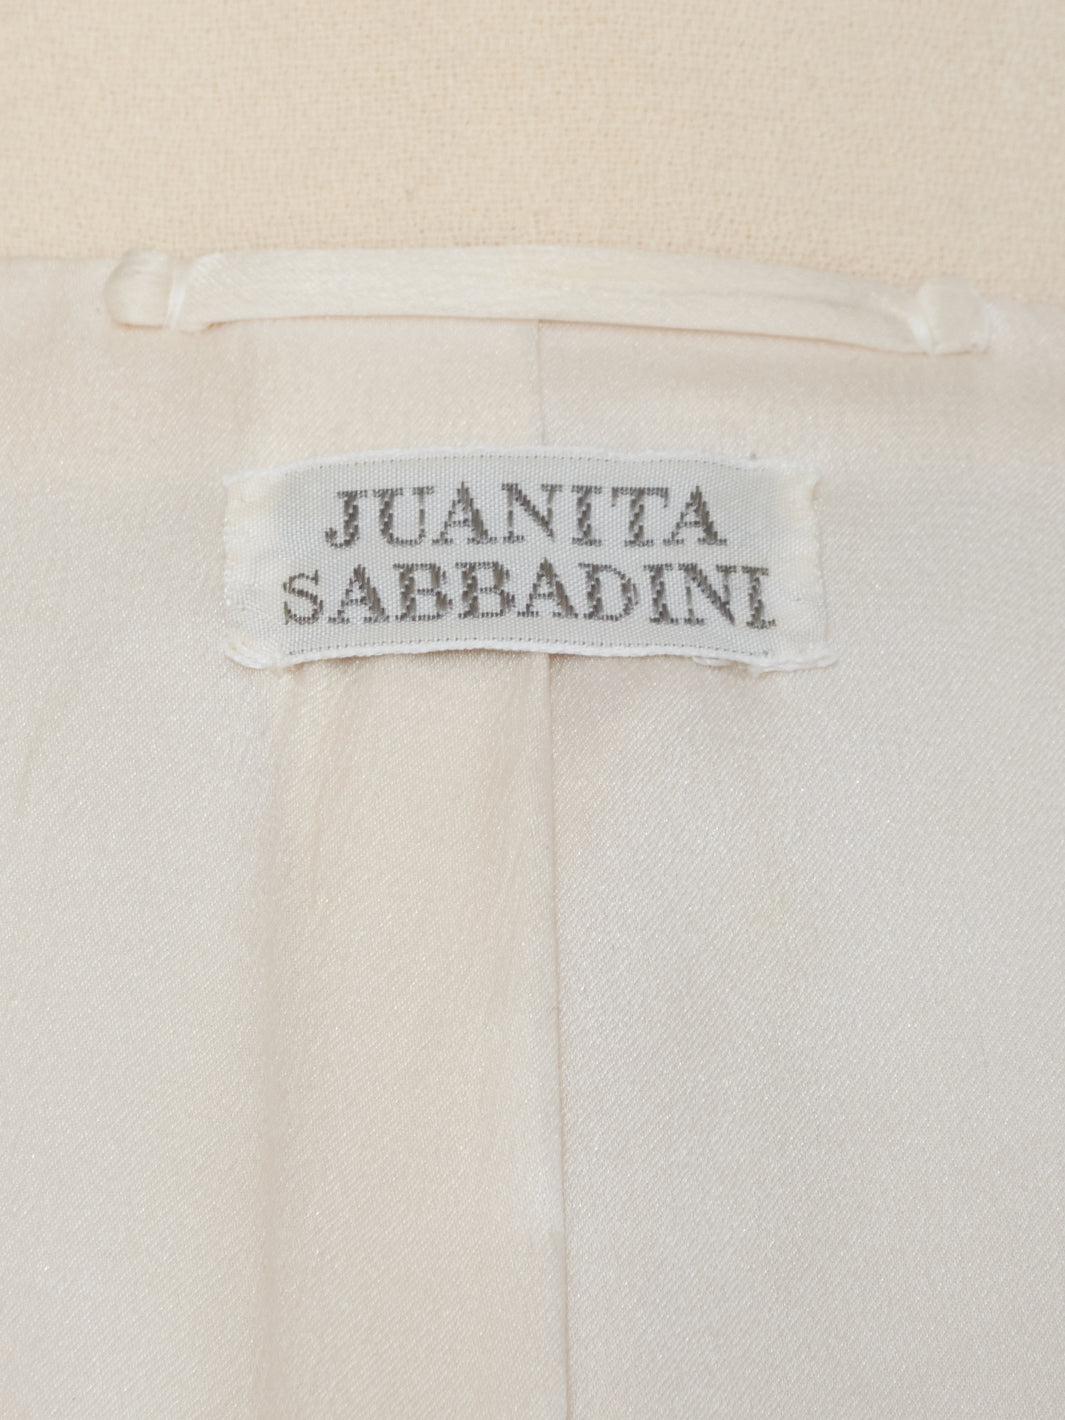 Juanita Sabbadini White Wool Suit